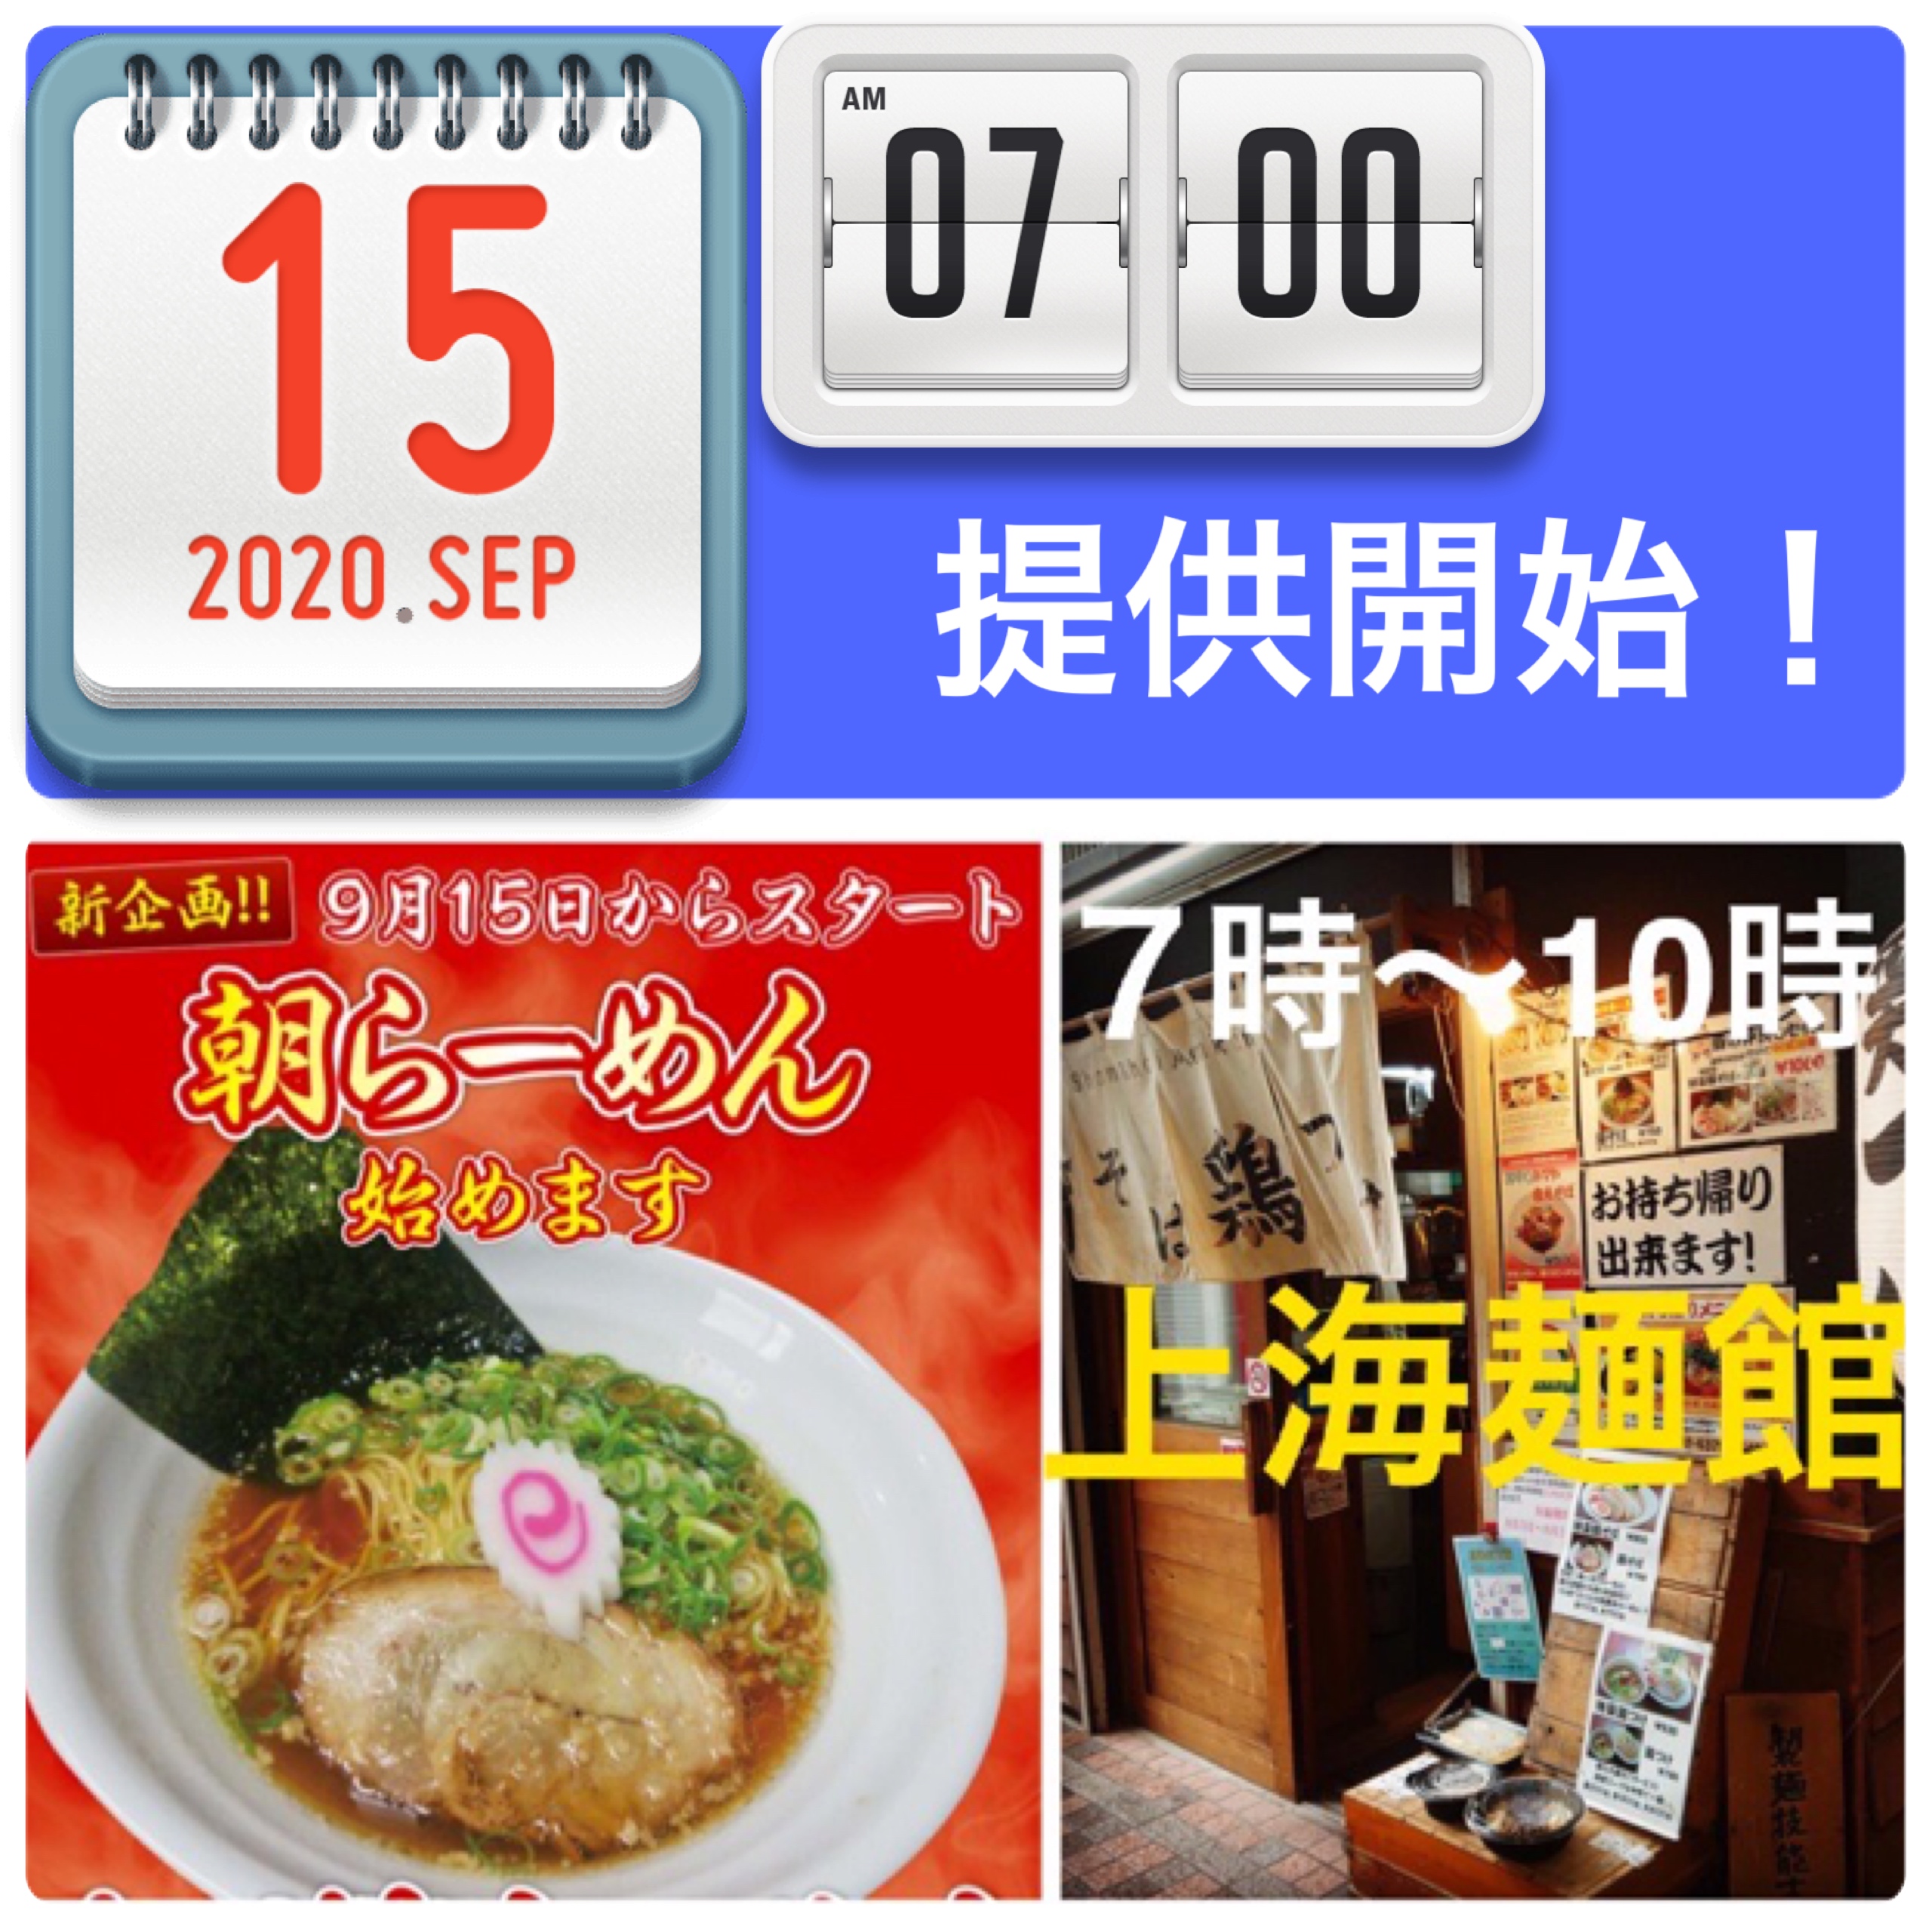 上海麺館　月ー土曜祝日 7時-10時、朝らーめん提供中。日曜は休業。